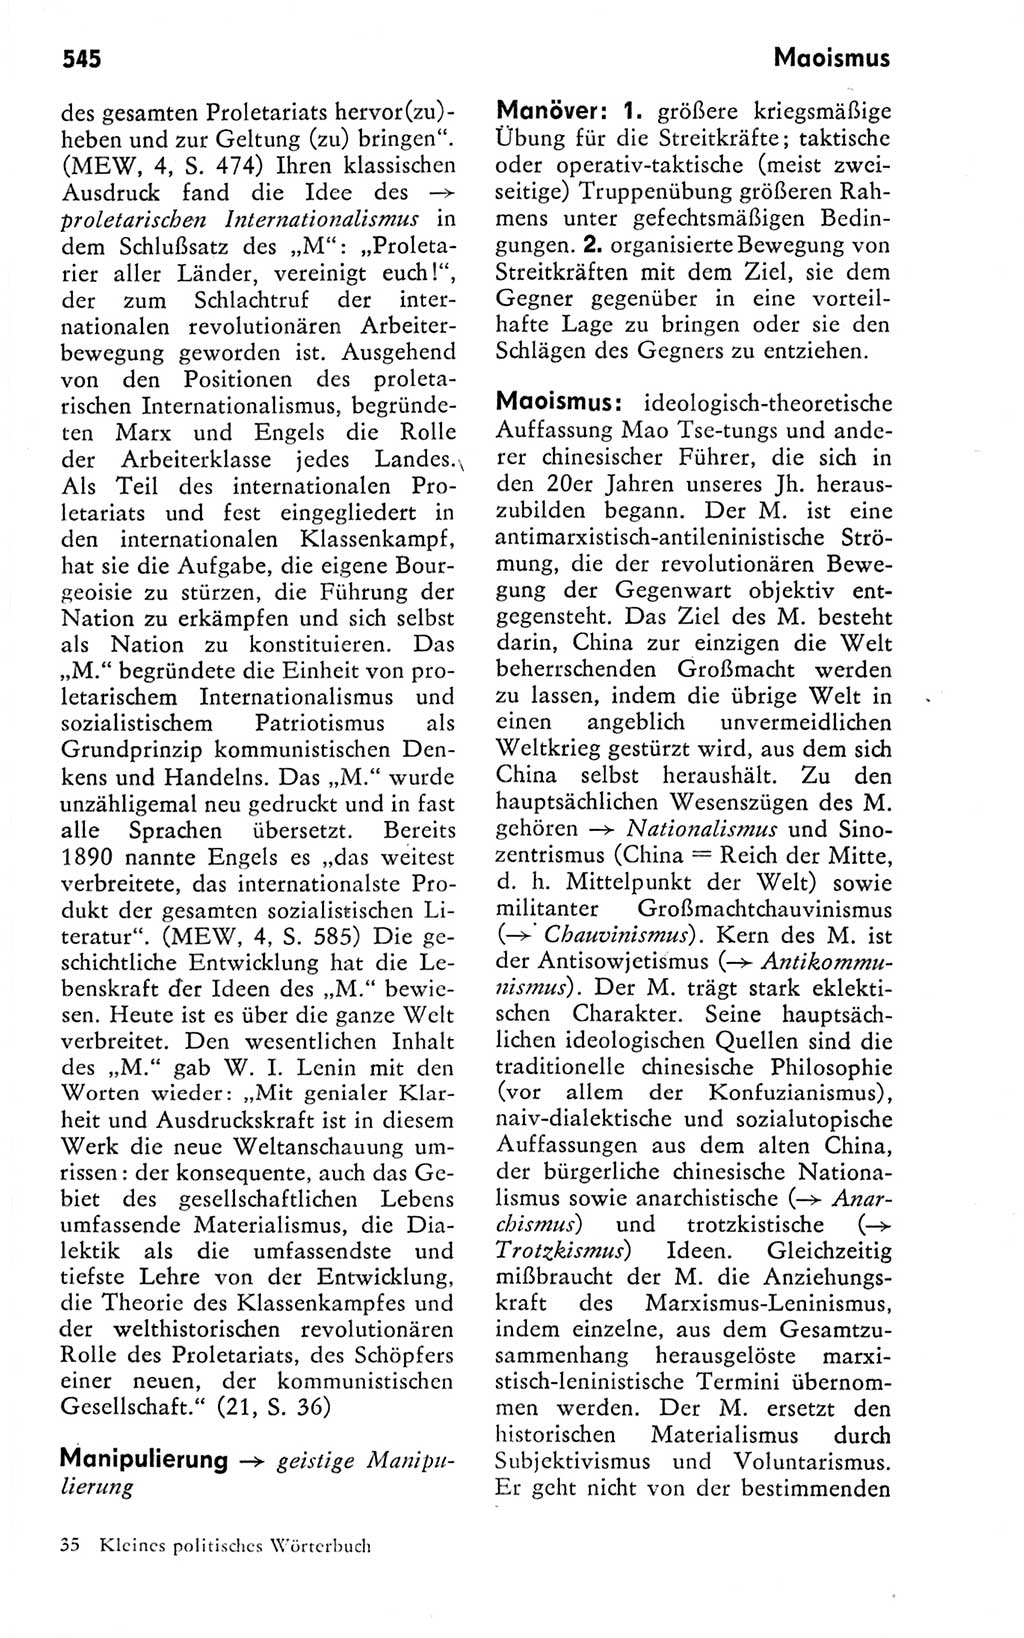 Kleines politisches Wörterbuch [Deutsche Demokratische Republik (DDR)] 1978, Seite 545 (Kl. pol. Wb. DDR 1978, S. 545)